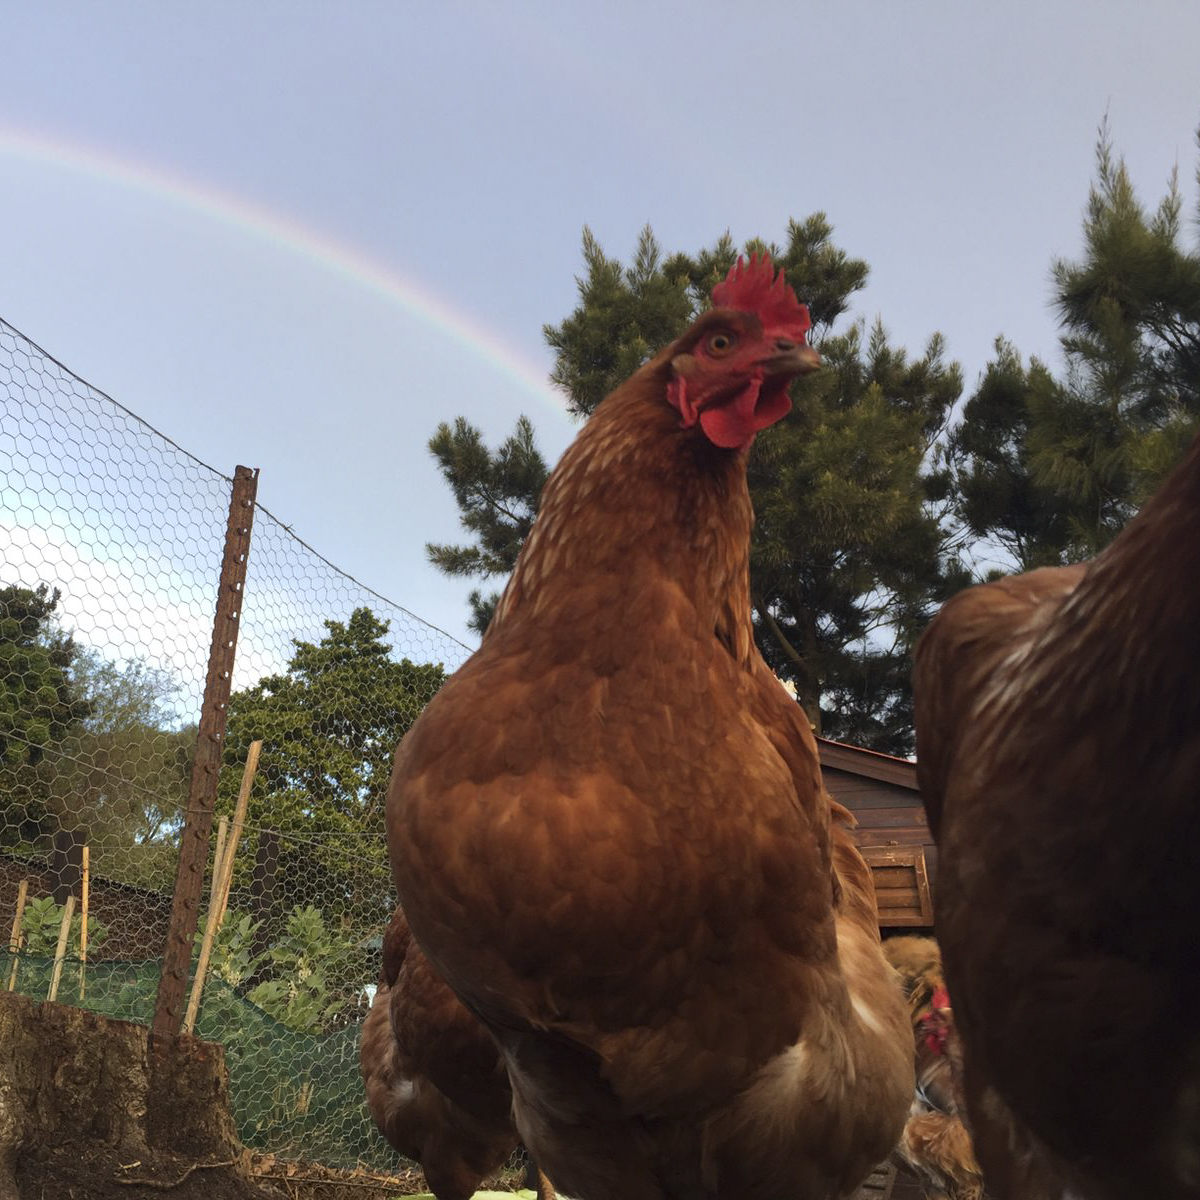 Chicken and rainbow